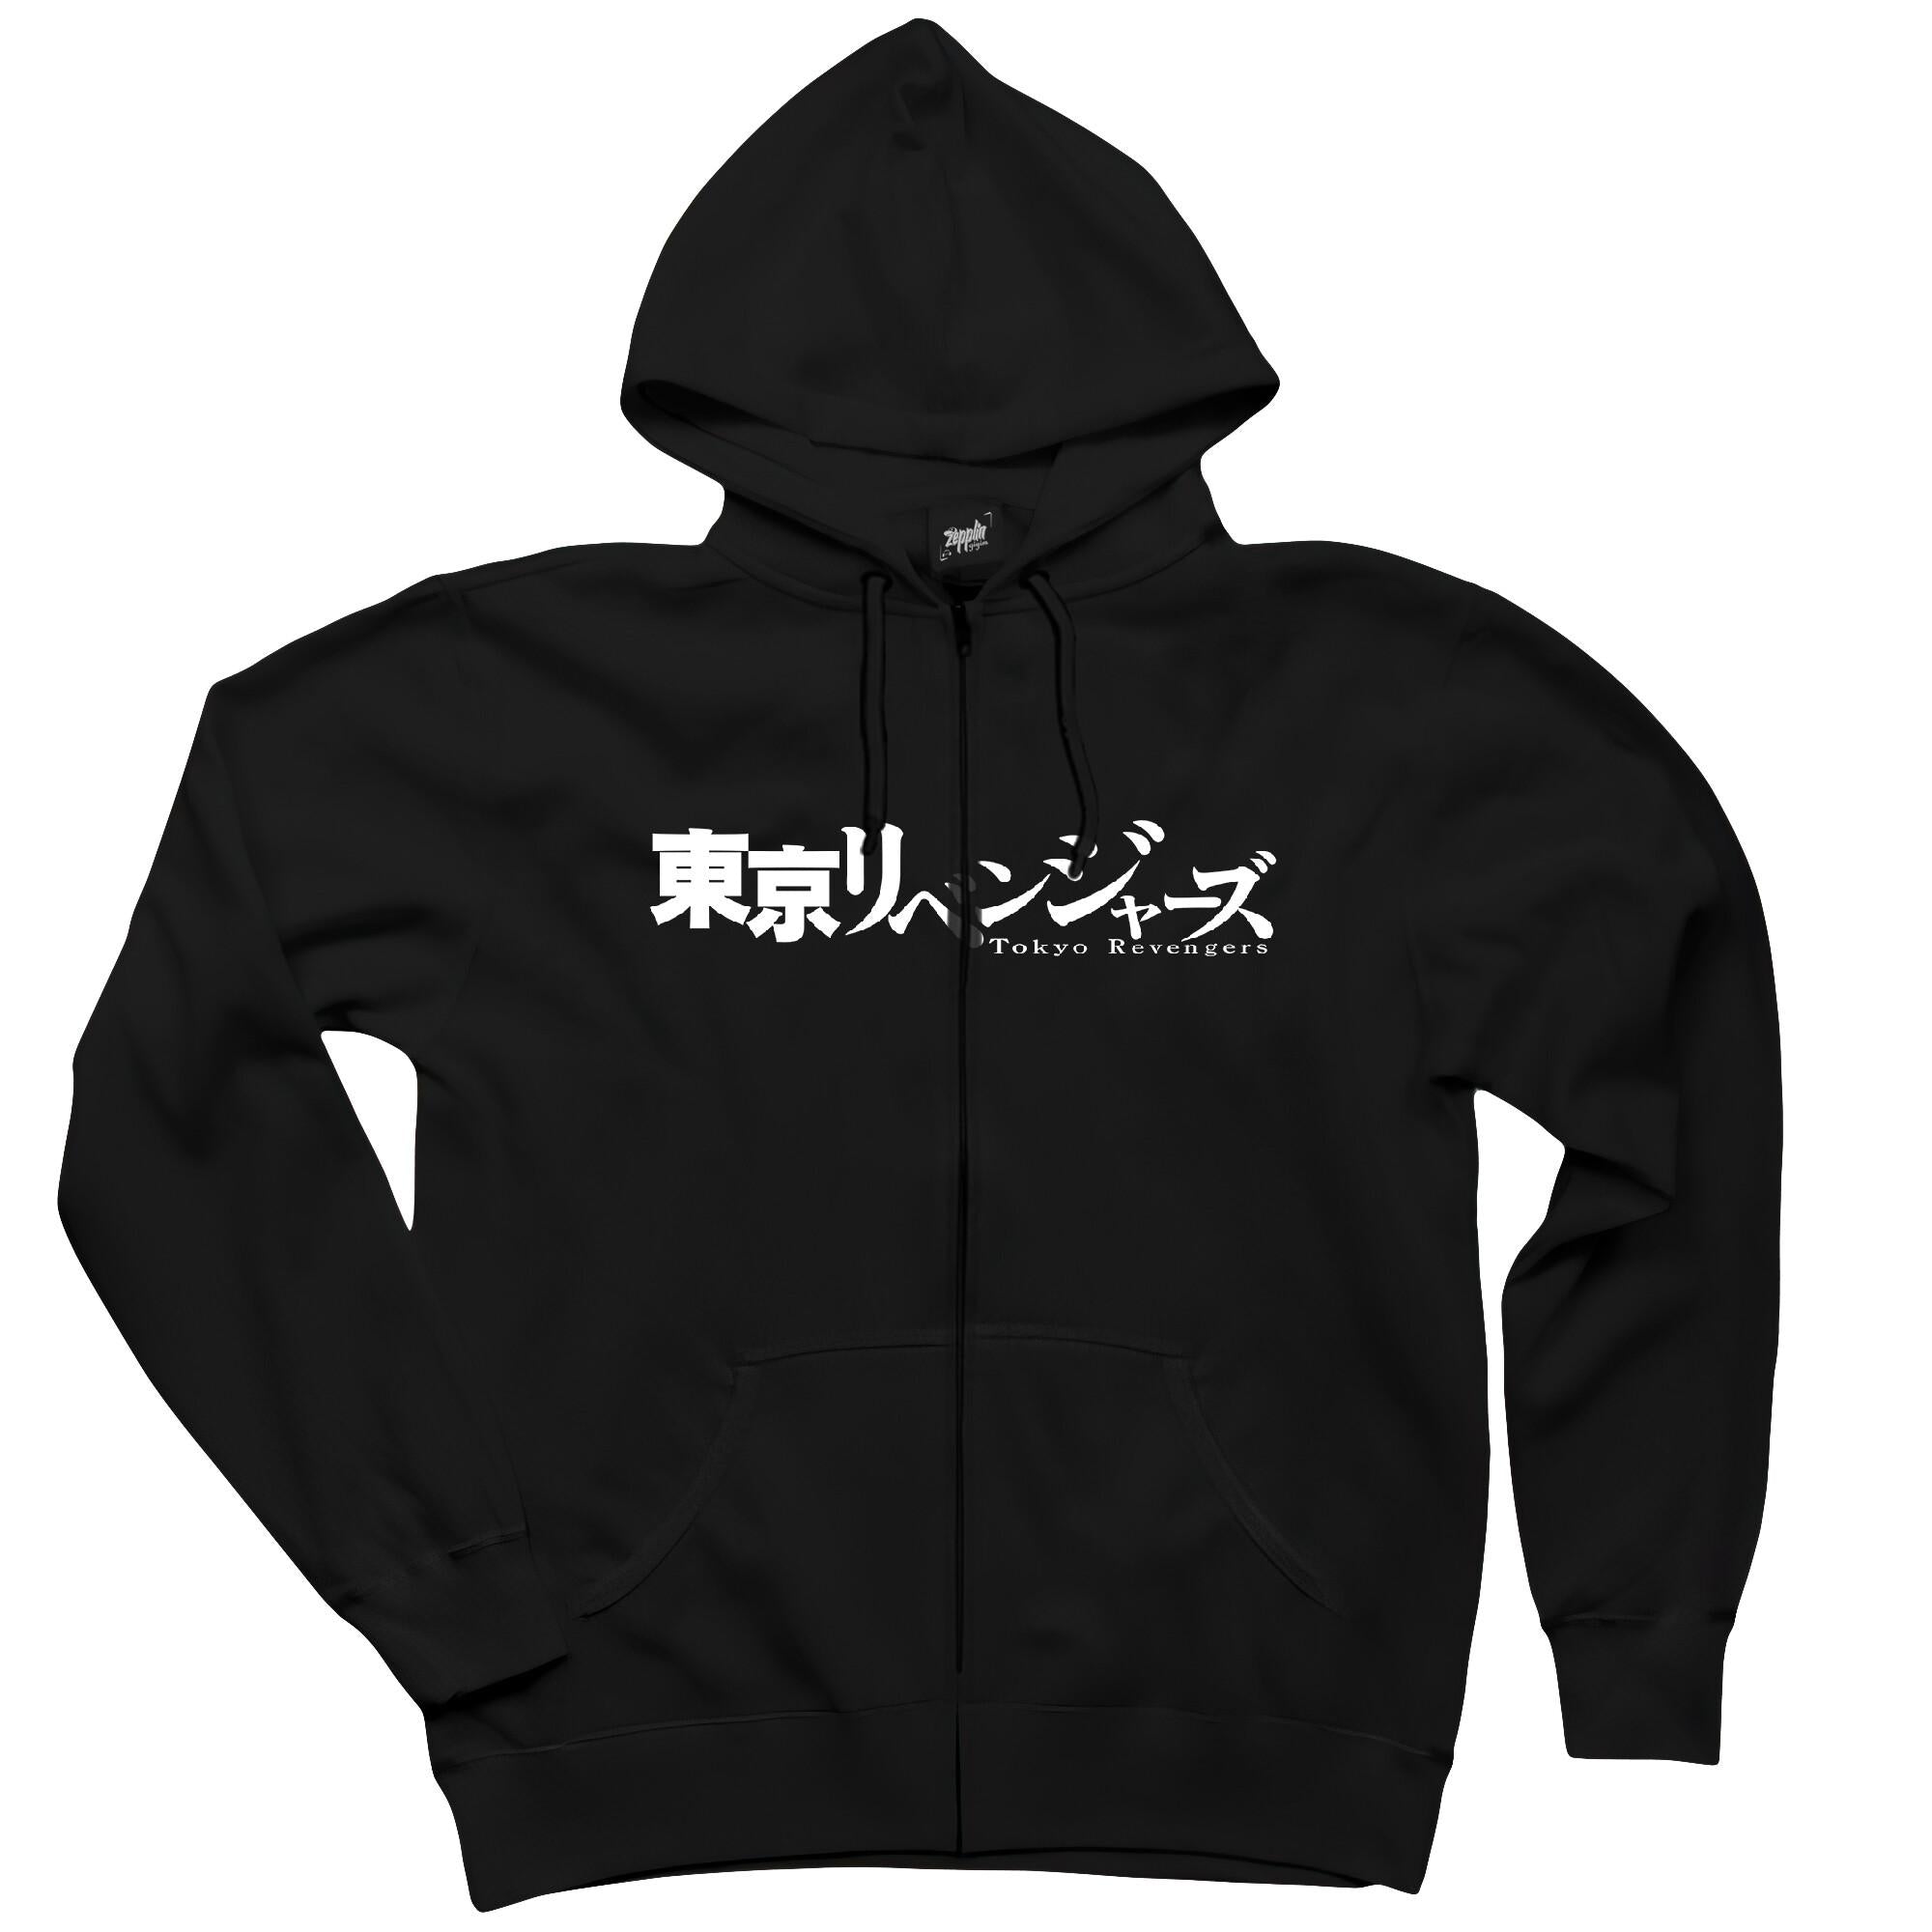 Tokyo Revengers Siyah Fermuarlı Kapşonlu Sweatshirt